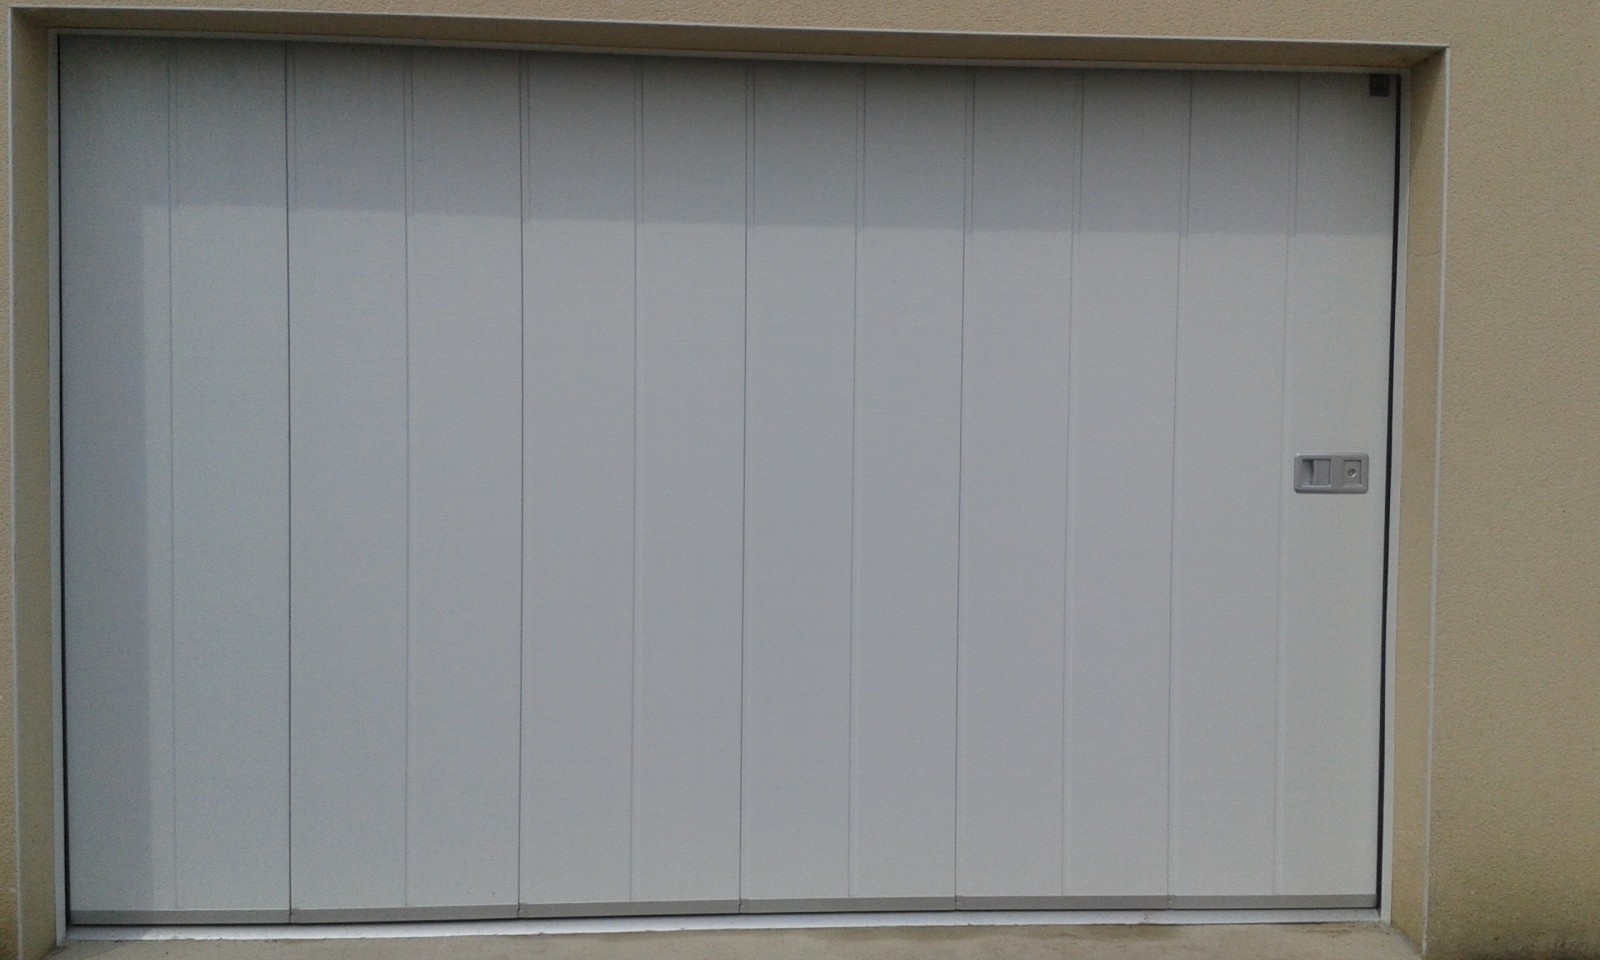 Joints de porte de garage : latéral, bas, seuil, vertical